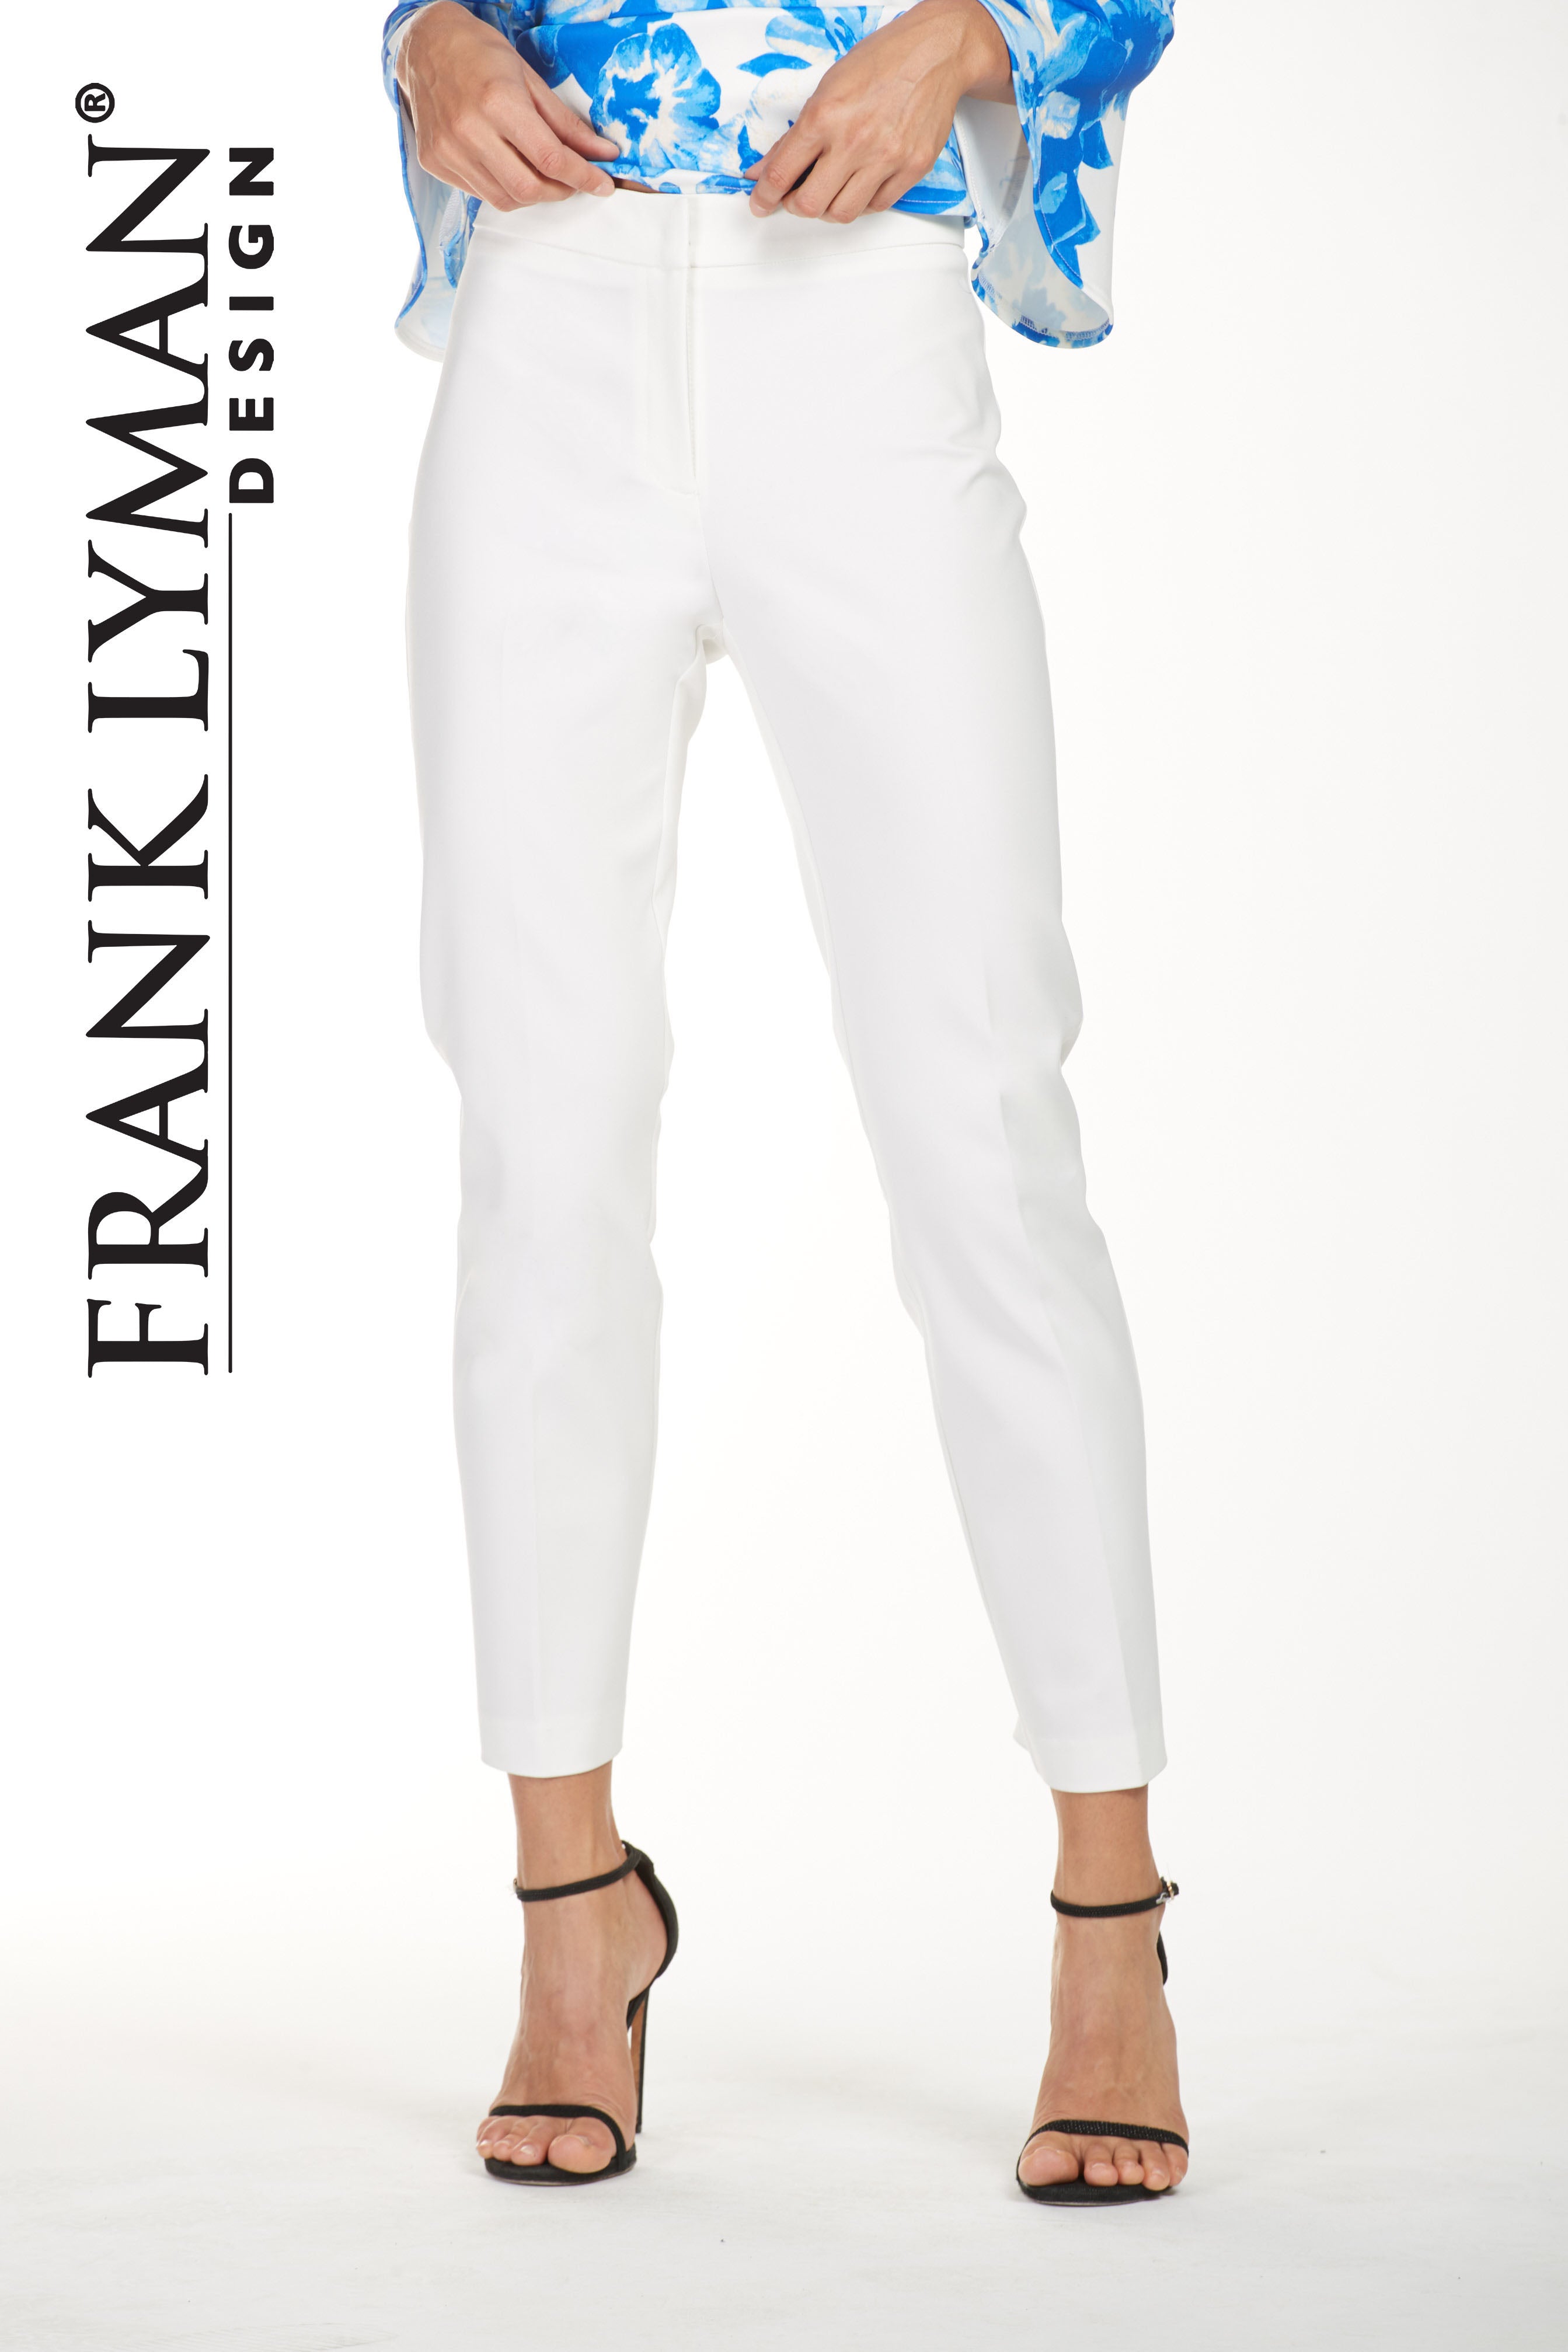 Frank Lyman Design Pants-Frank Lyman Pants-Buy Frank Lyman Clothing Online-Shop Frank Lyman Sales Online